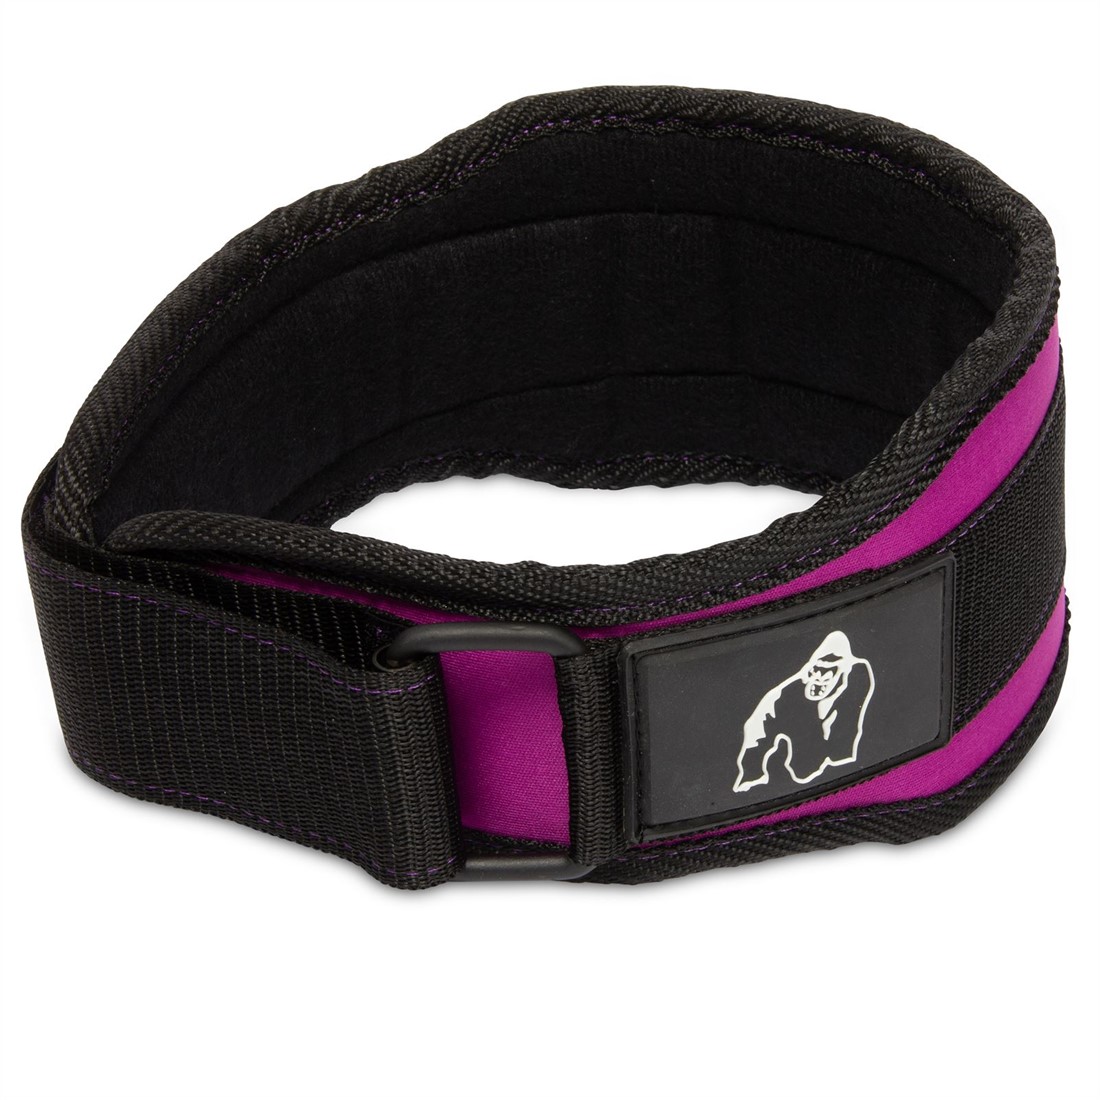 Gorilla Wear 4 Inch Women's Lifting Belt - Black/Purple - S Gorilla Wear